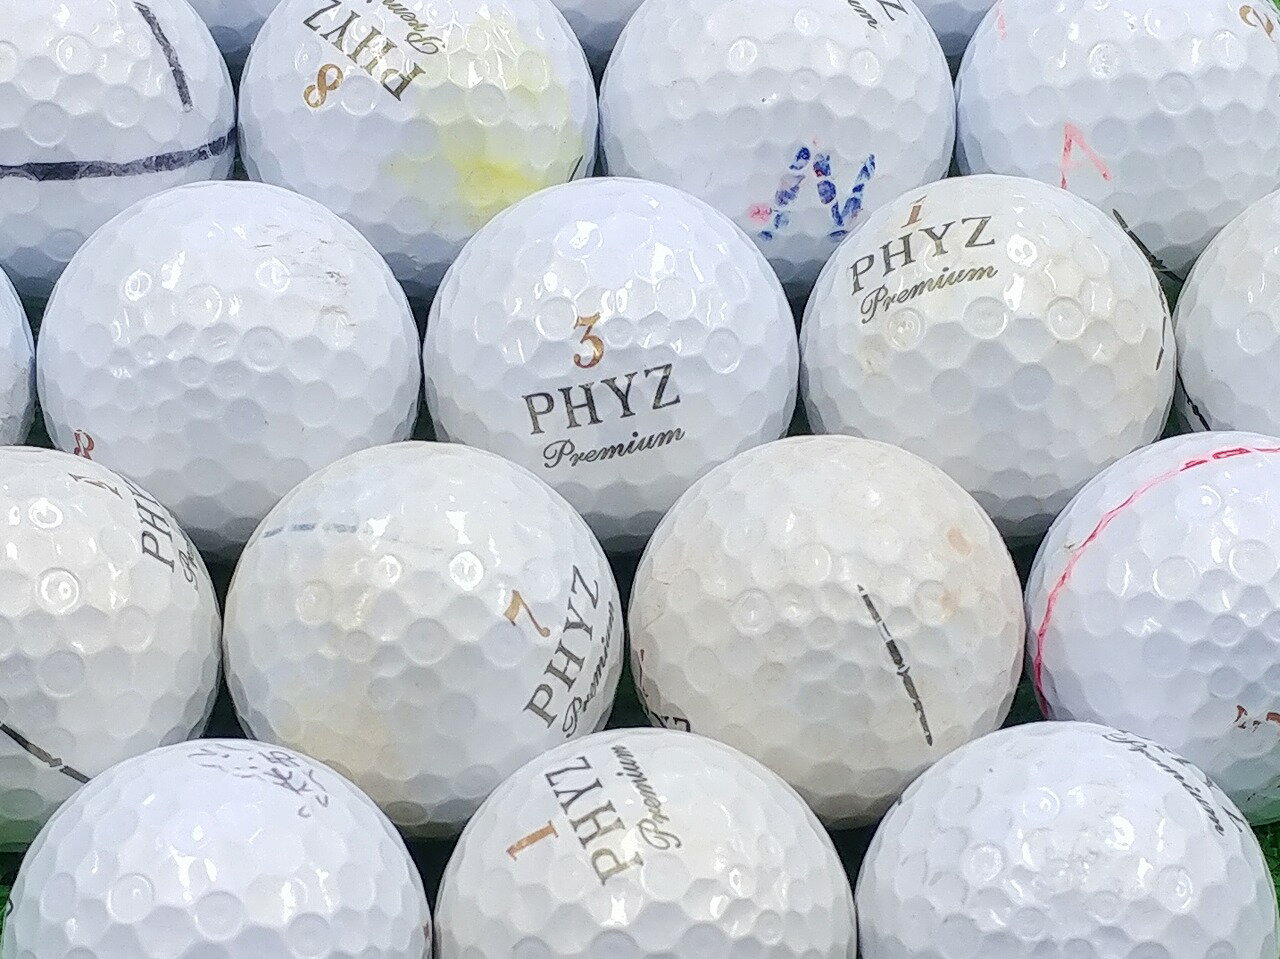 BRIDGESTONE GOLF PHYZ Premium 2014年モデル ゴールドパール 1個 ロストボール ゴルフボール